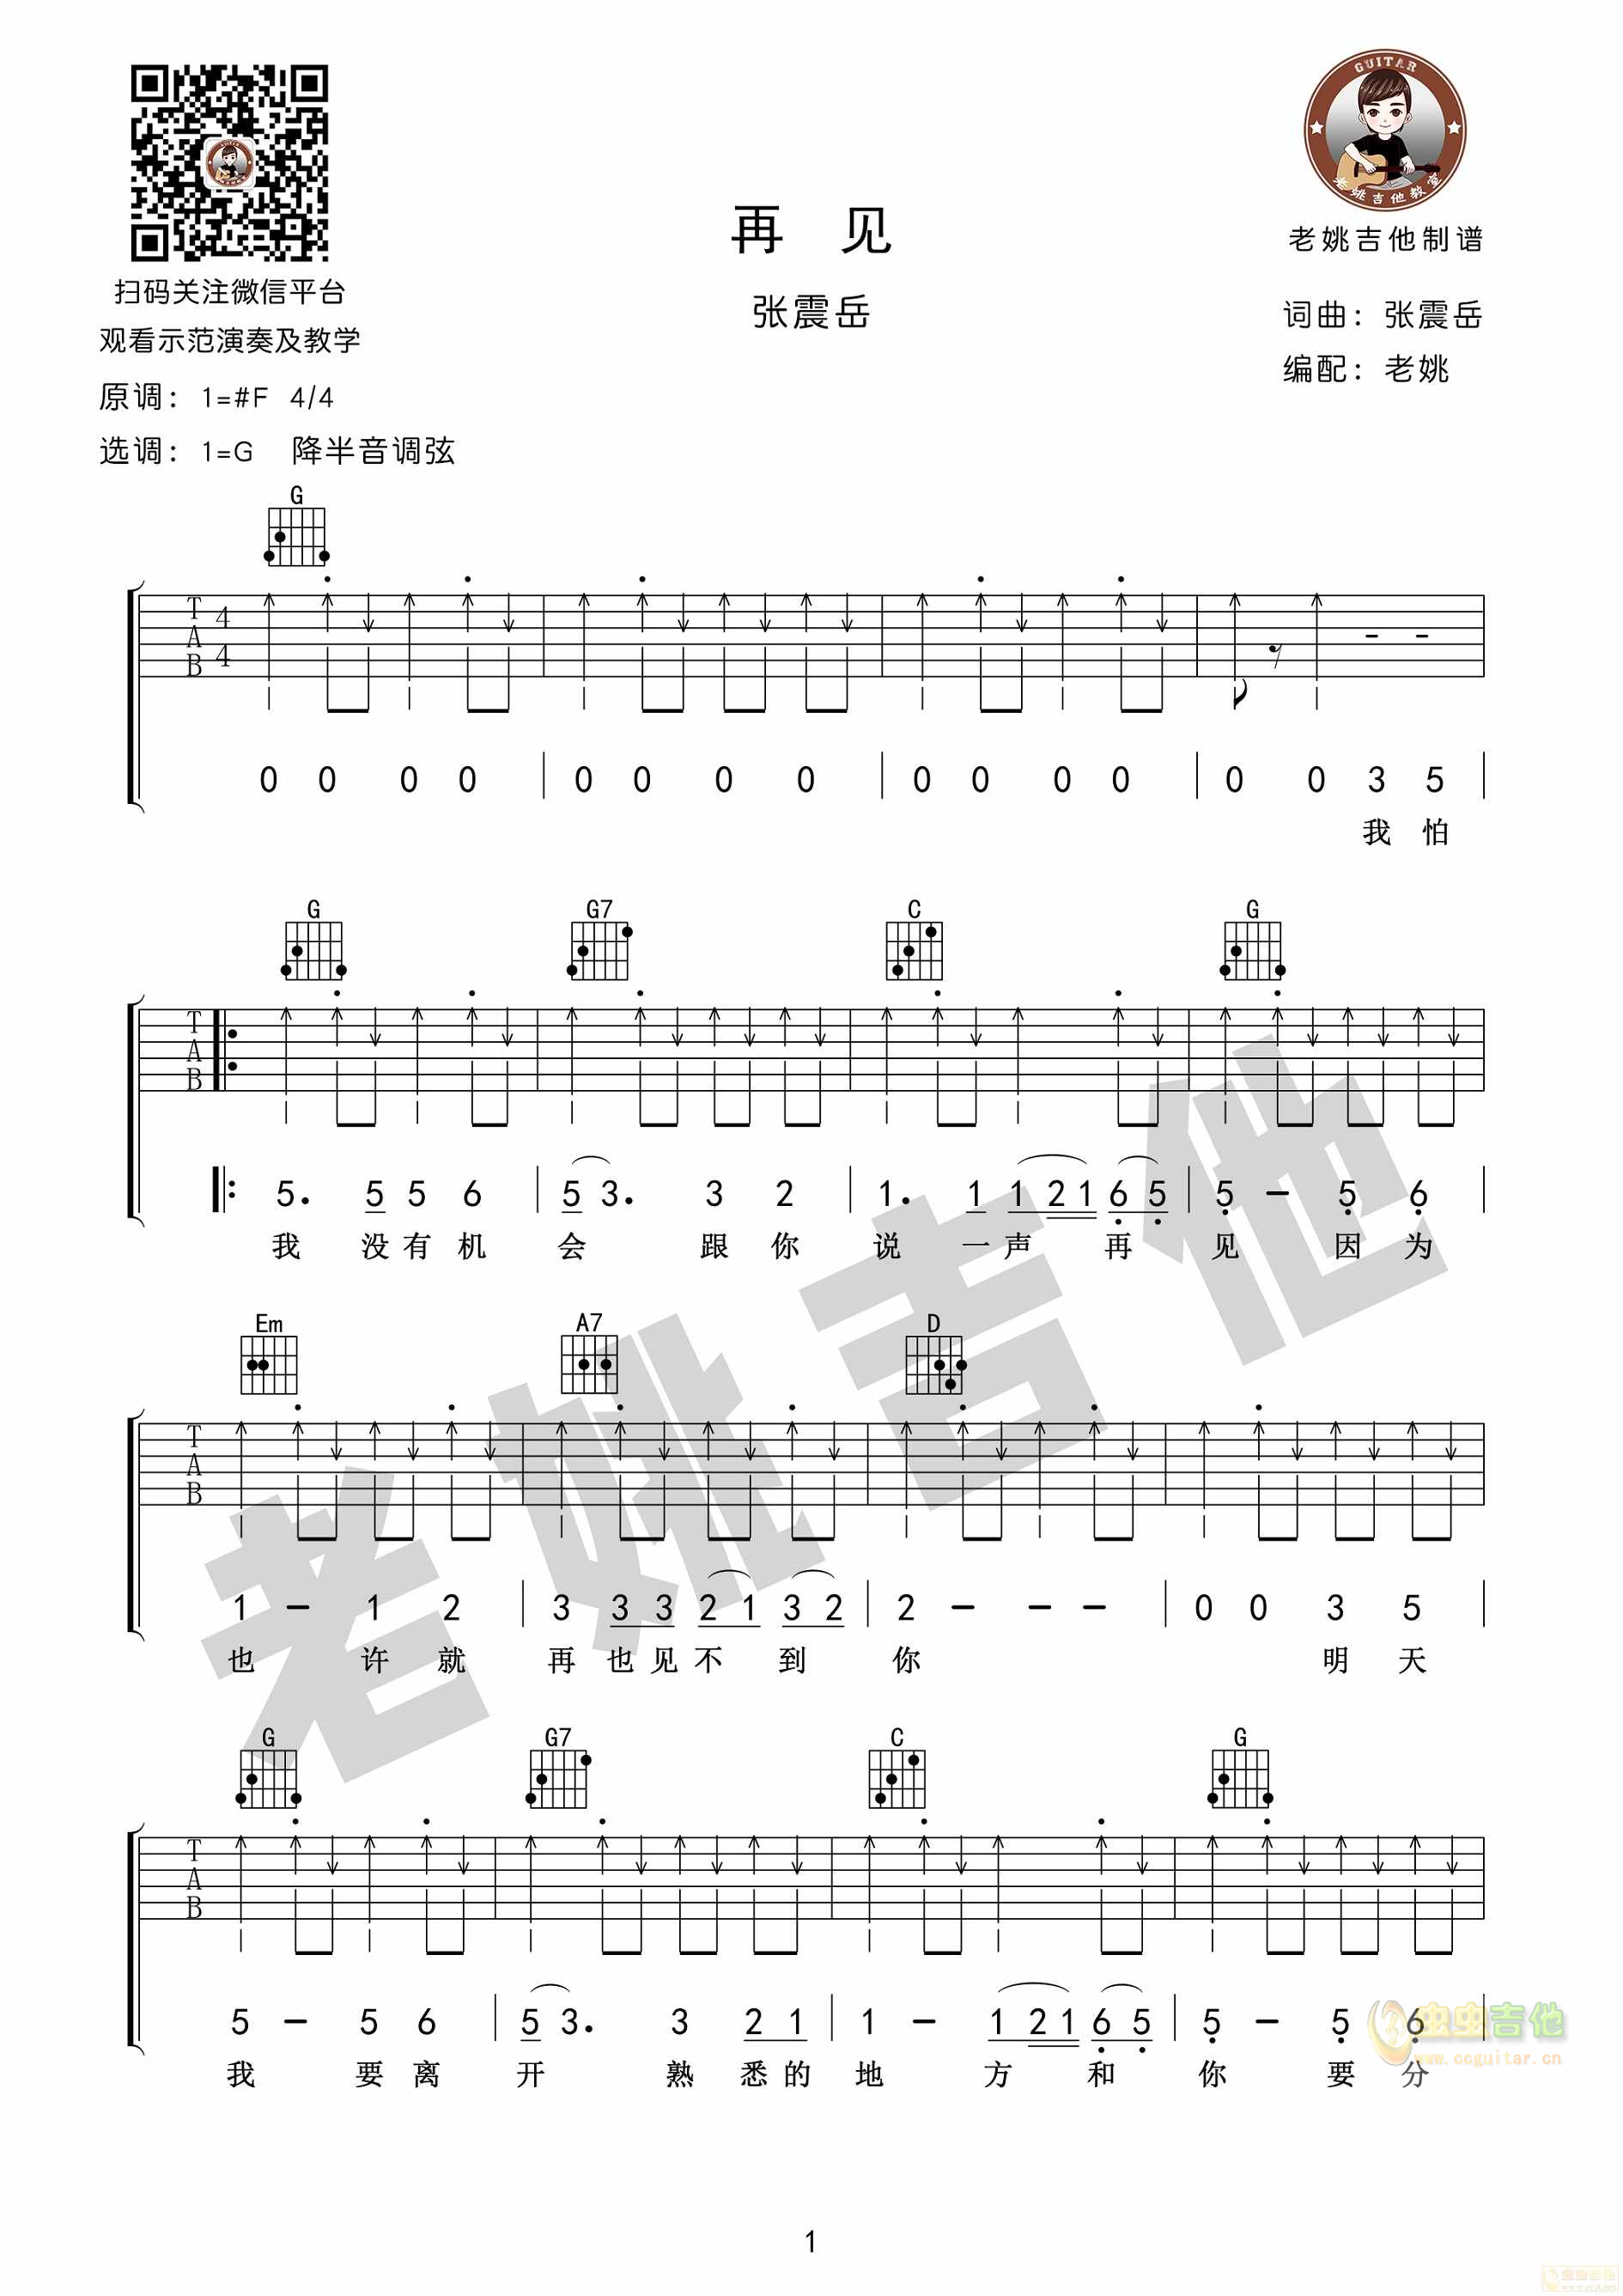 阿涛、喜儿《愿》吉他谱 阿涛-彼岸吉他 - 一站式吉他爱好者服务平台